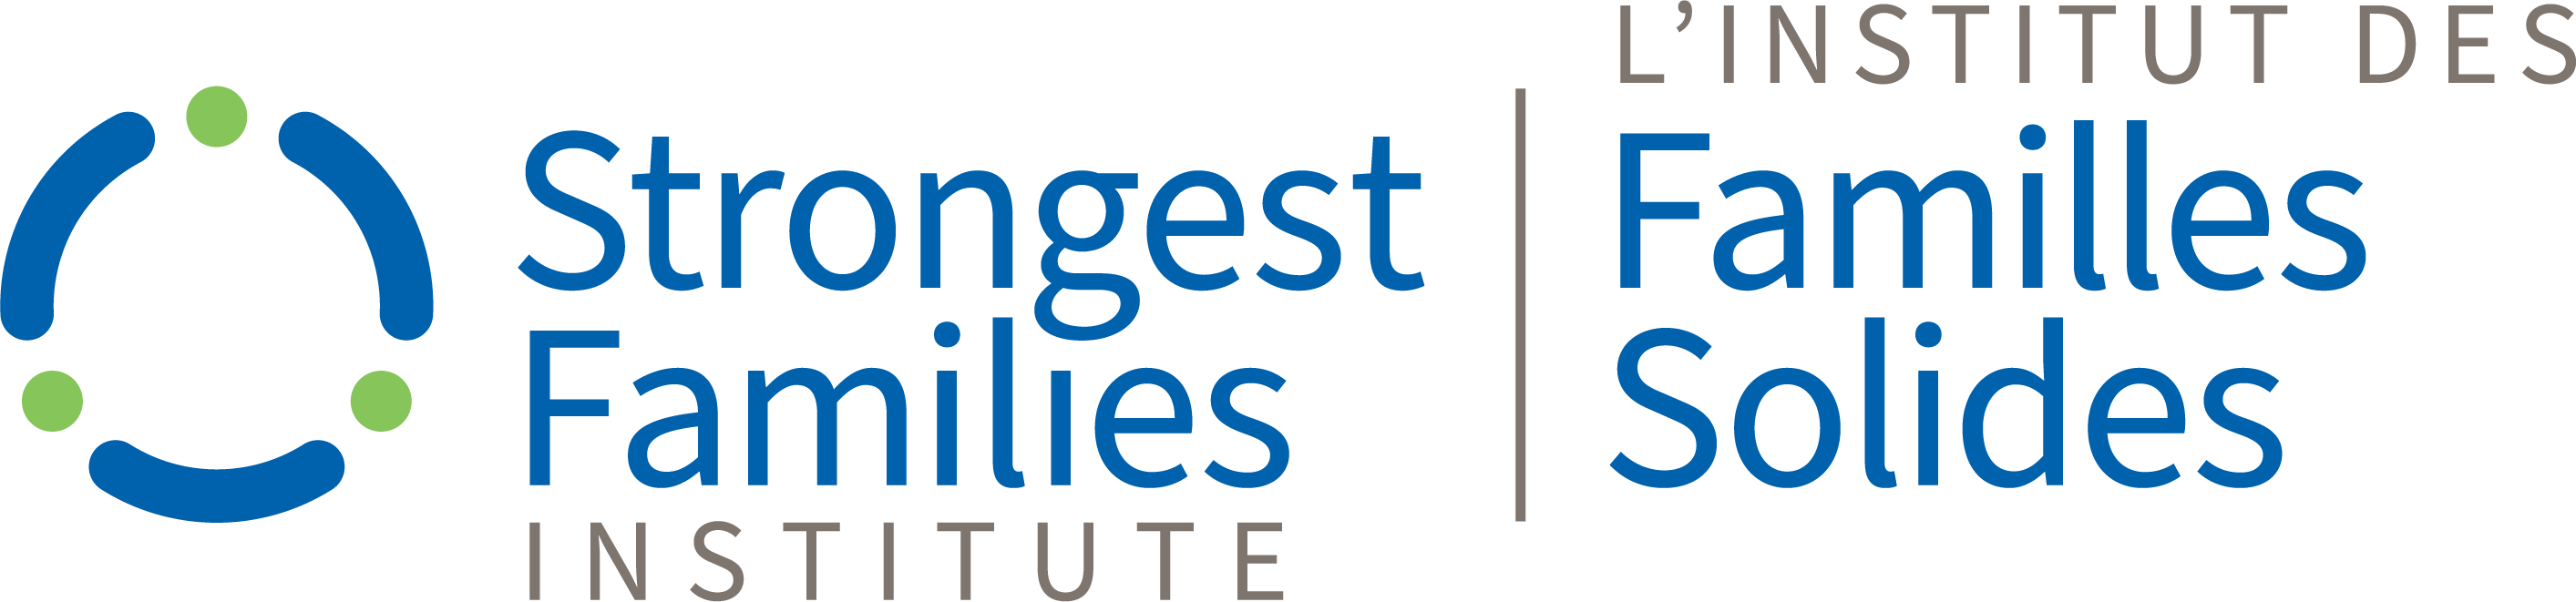 Strongest Families Institute logo